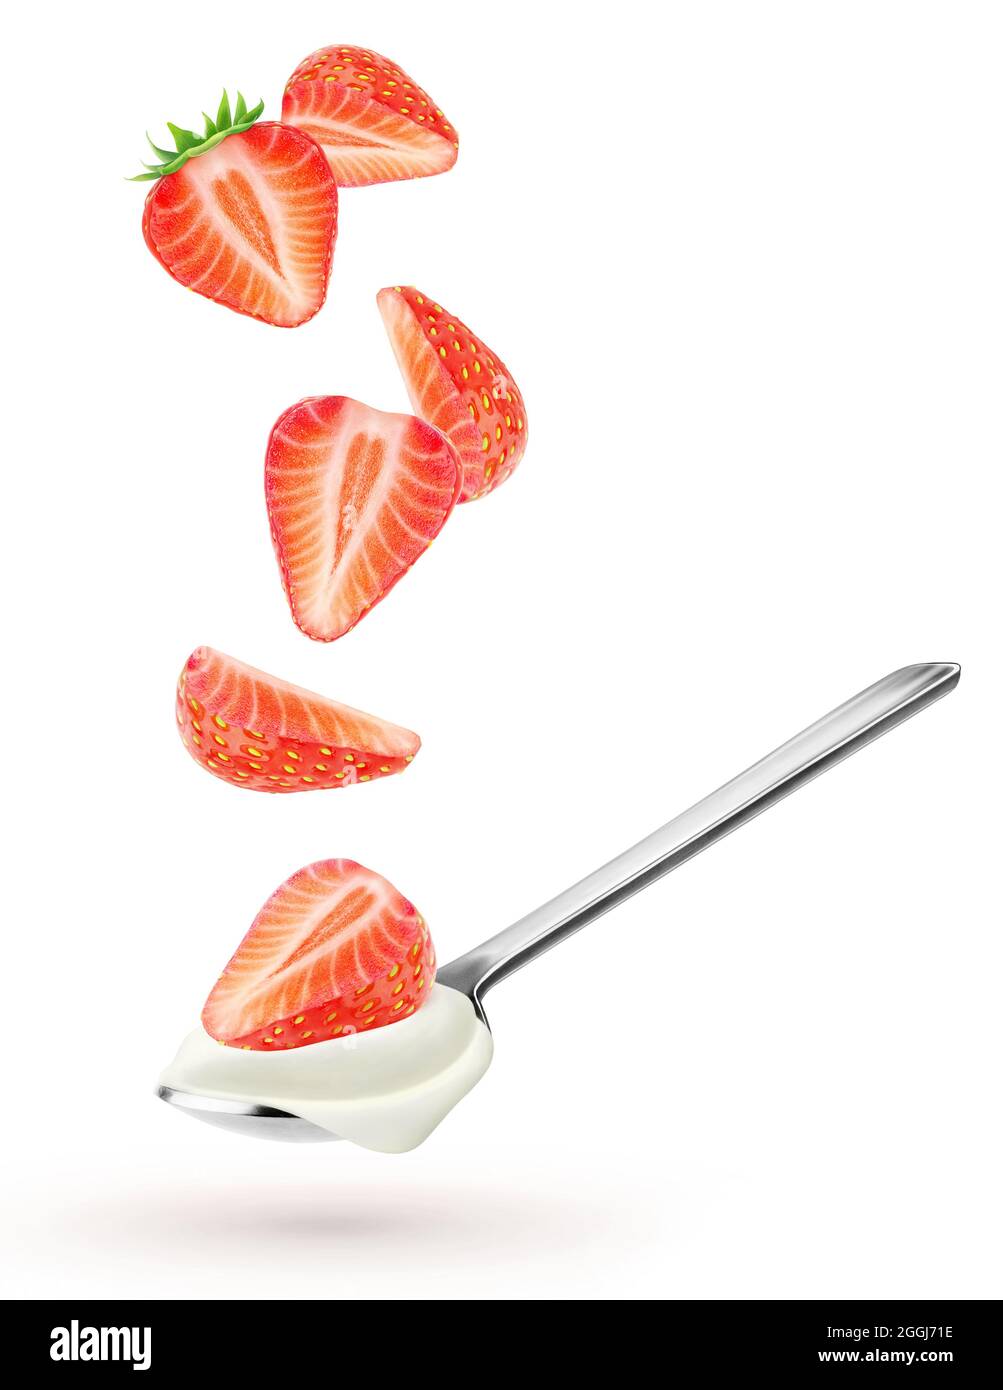 Isolierter Joghurt mit Früchten. Löffel mit natürlichem Joghurt und fallenden Stücken von Erdbeere isoliert auf weißem Hintergrund Stockfoto